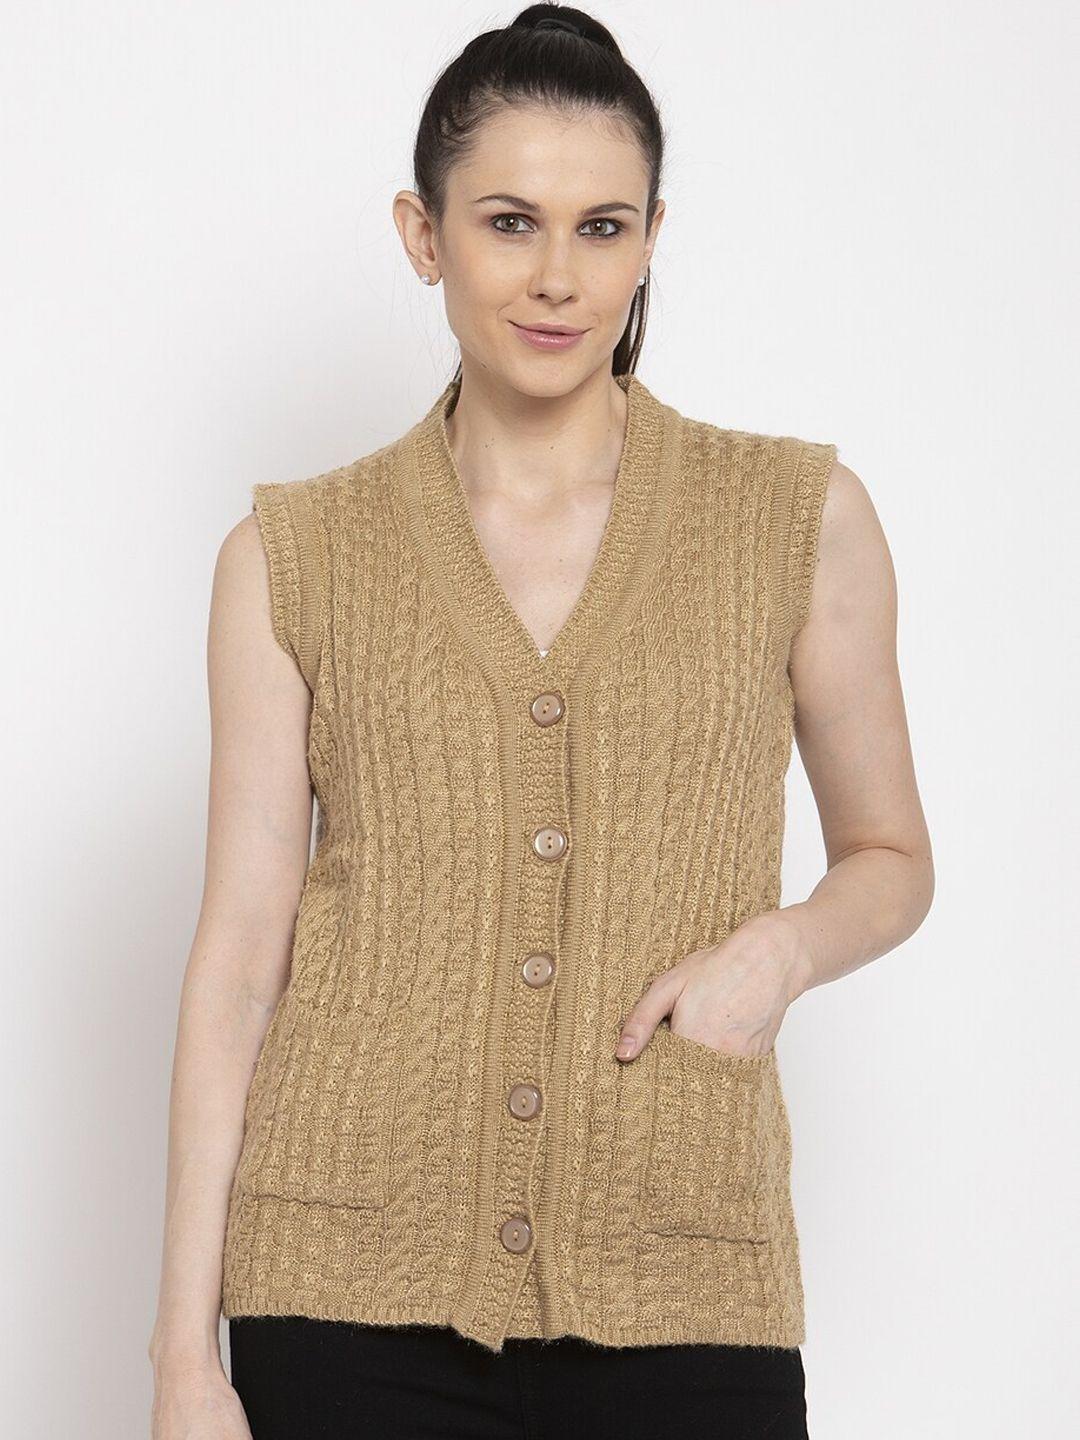 vanya women brown self design cardigan sweater